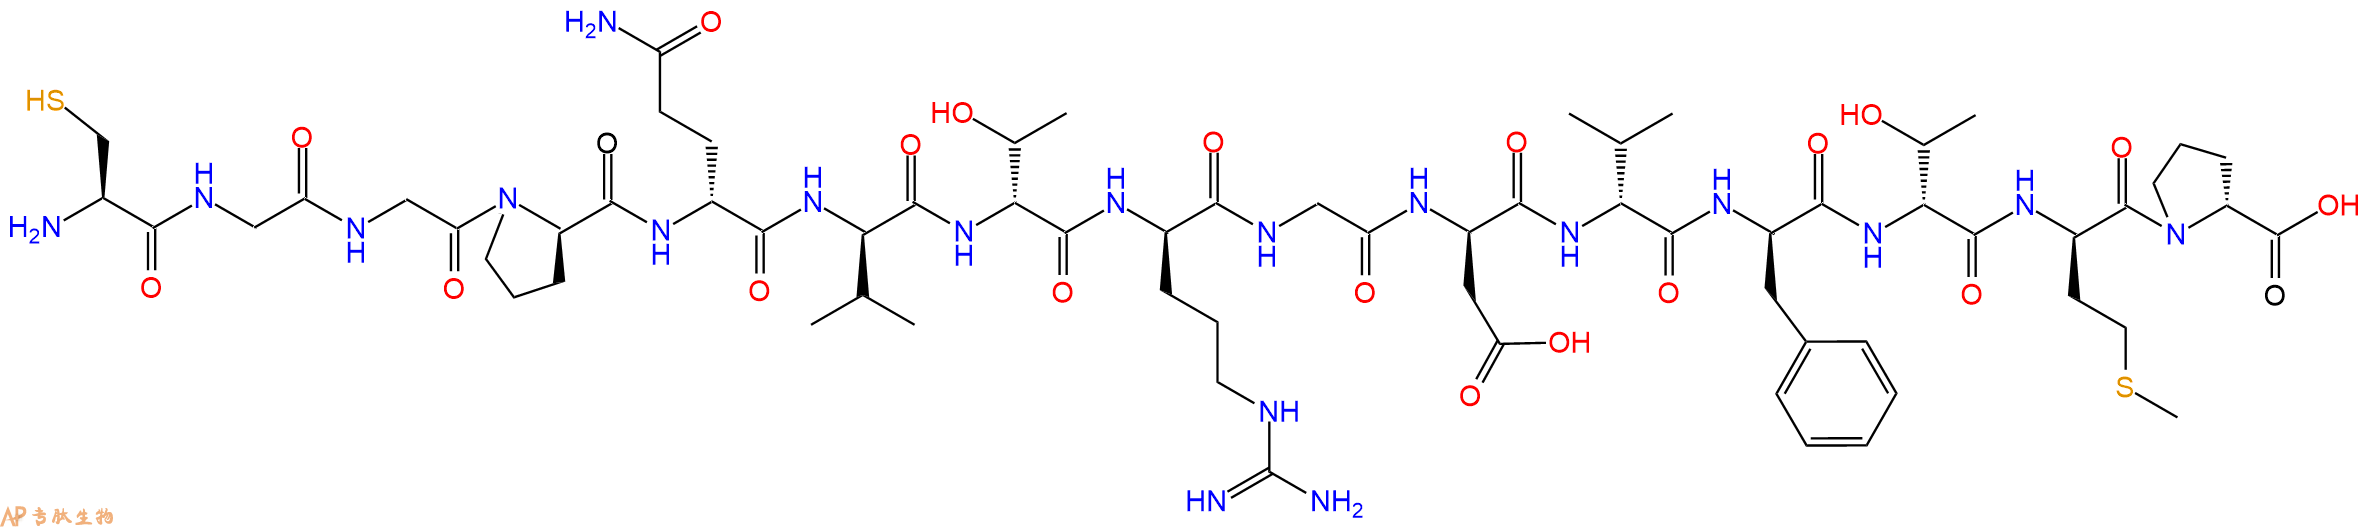 专肽生物产品H2N-Cys-Gly-Gly-DPro-DGln-DVal-DThr-DArg-Gly-DAsp-